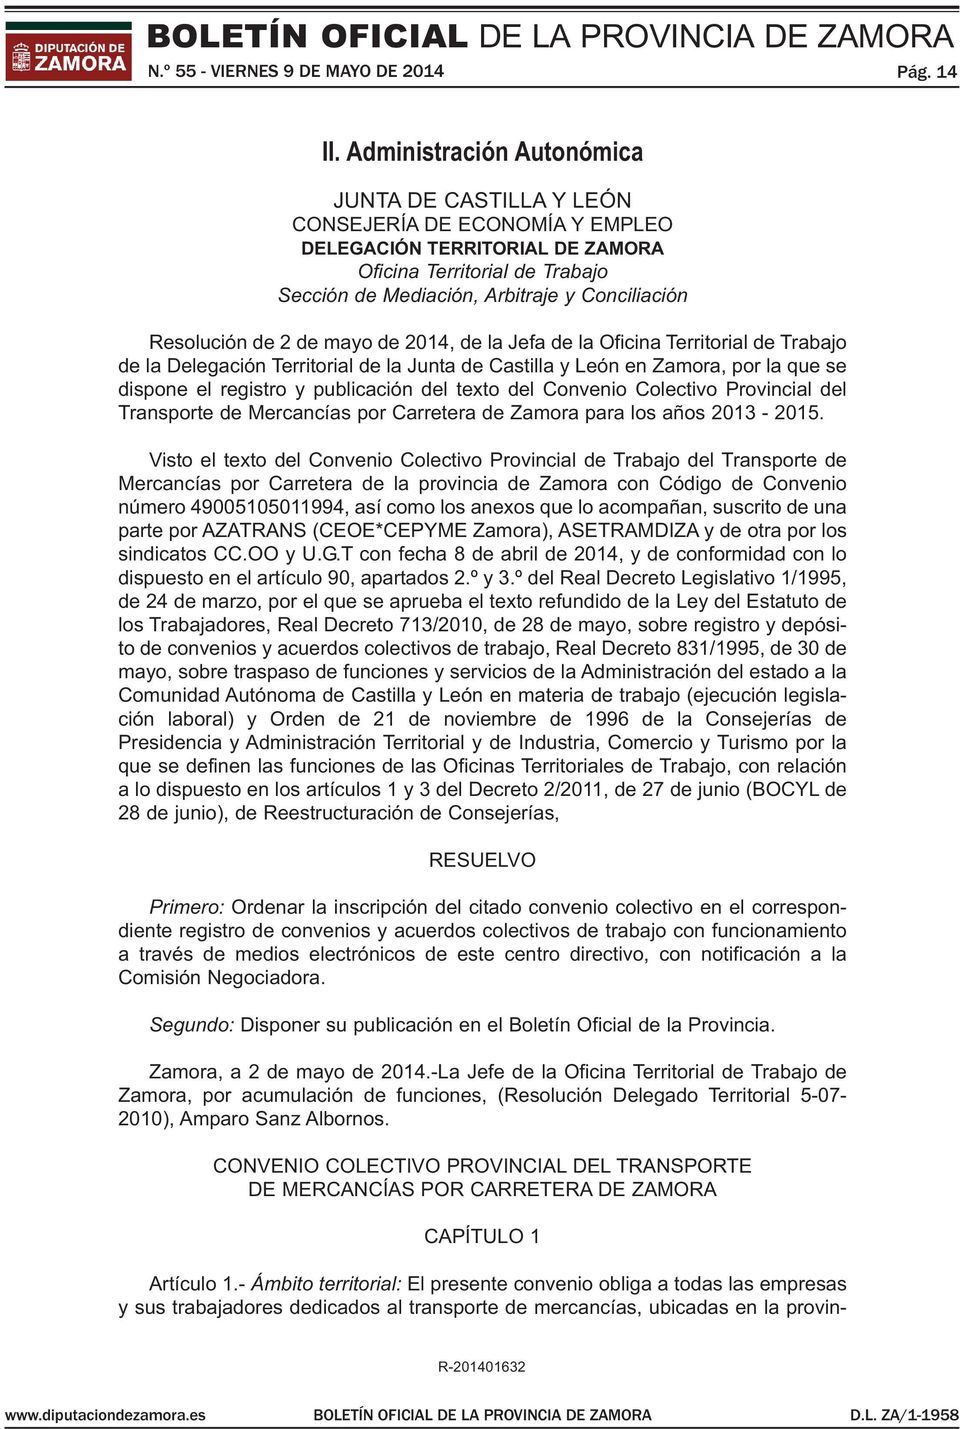 Resolución de 2 de mayo de 2014, de la Jefa de la Oficina Territorial de Trabajo de la Delegación Territorial de la Junta de Castilla y León en Zamora, por la que se dispone el registro y publicación